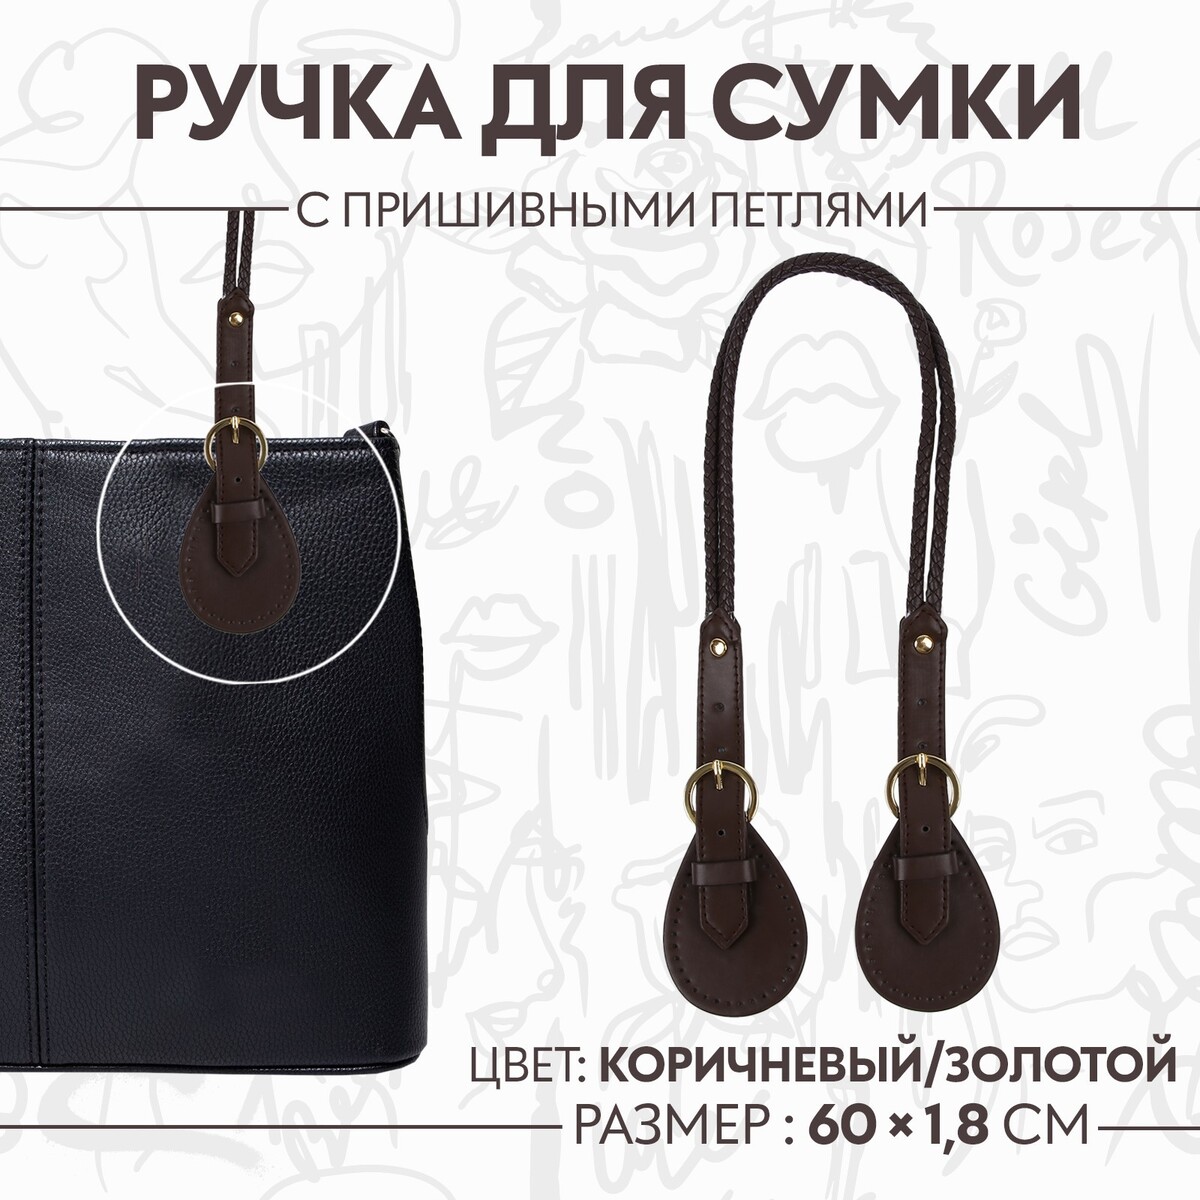 Ручка для сумки, шнуры, 60 × 1,8 см, с пришивными петлями 5,8 см, цвет коричневый/золотой ручка для сумки 60 × 1 см с пришивными петлями 3 5 см серебряный